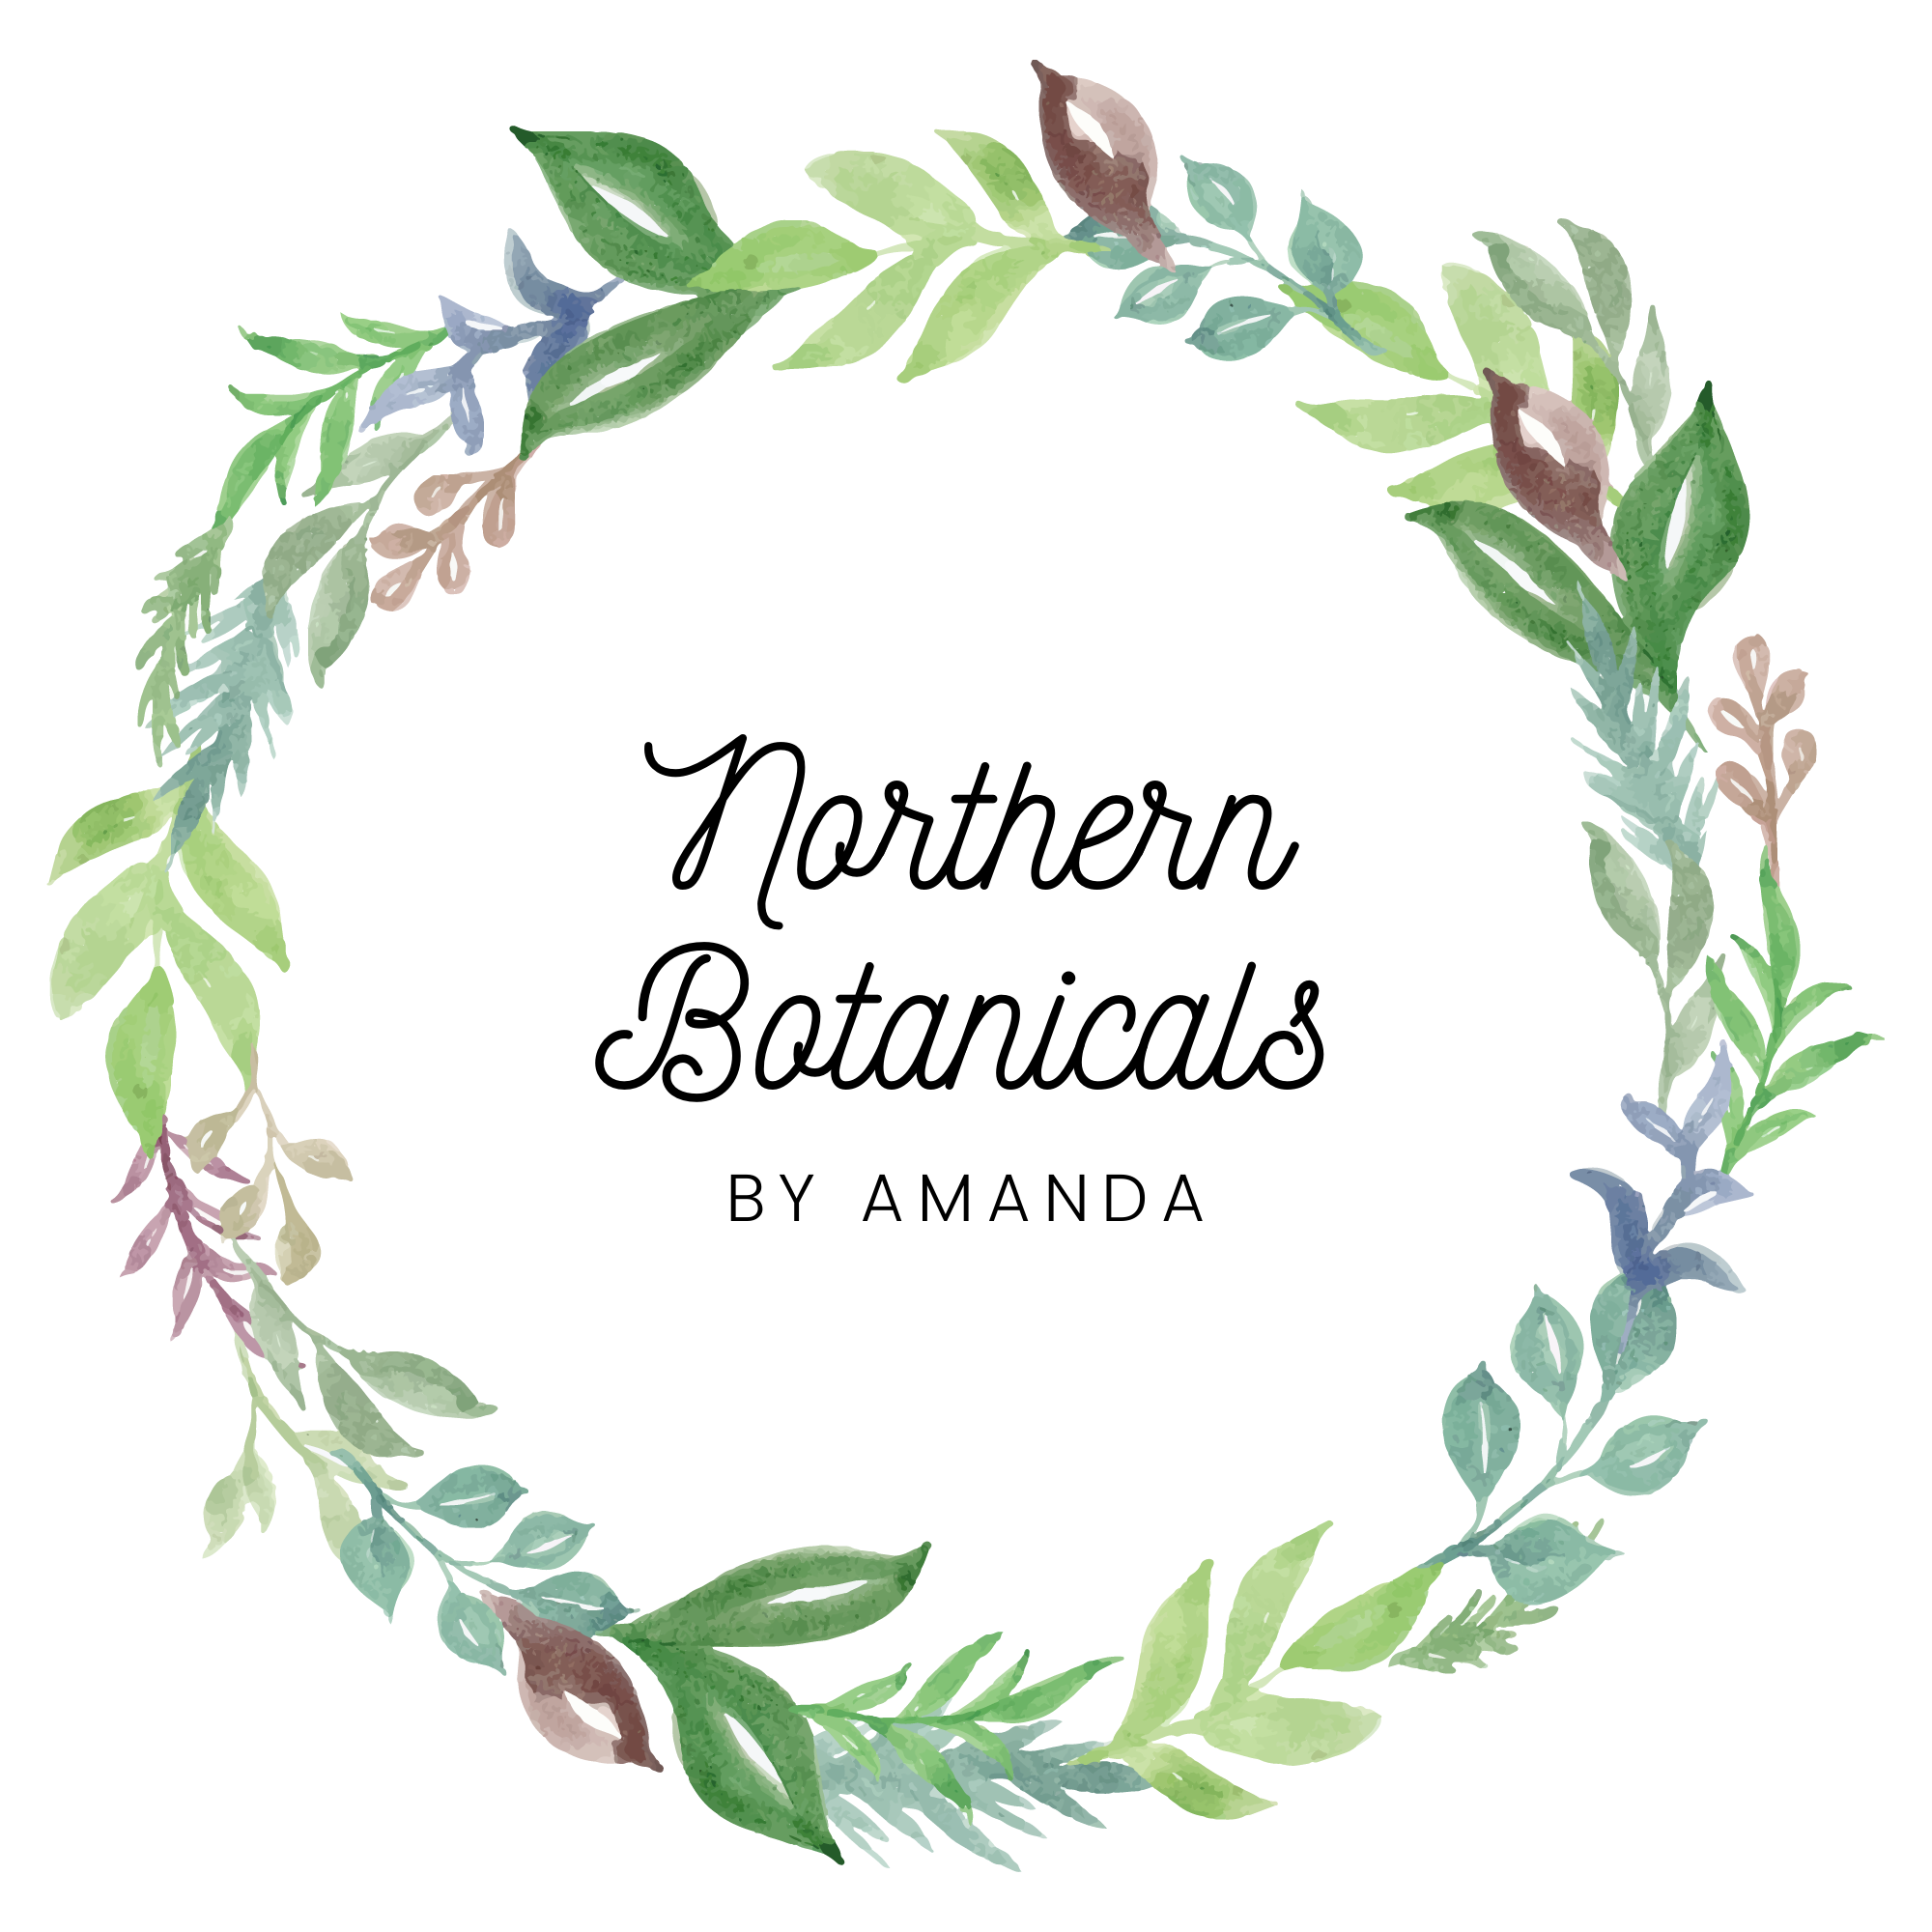 Northern Botanicals